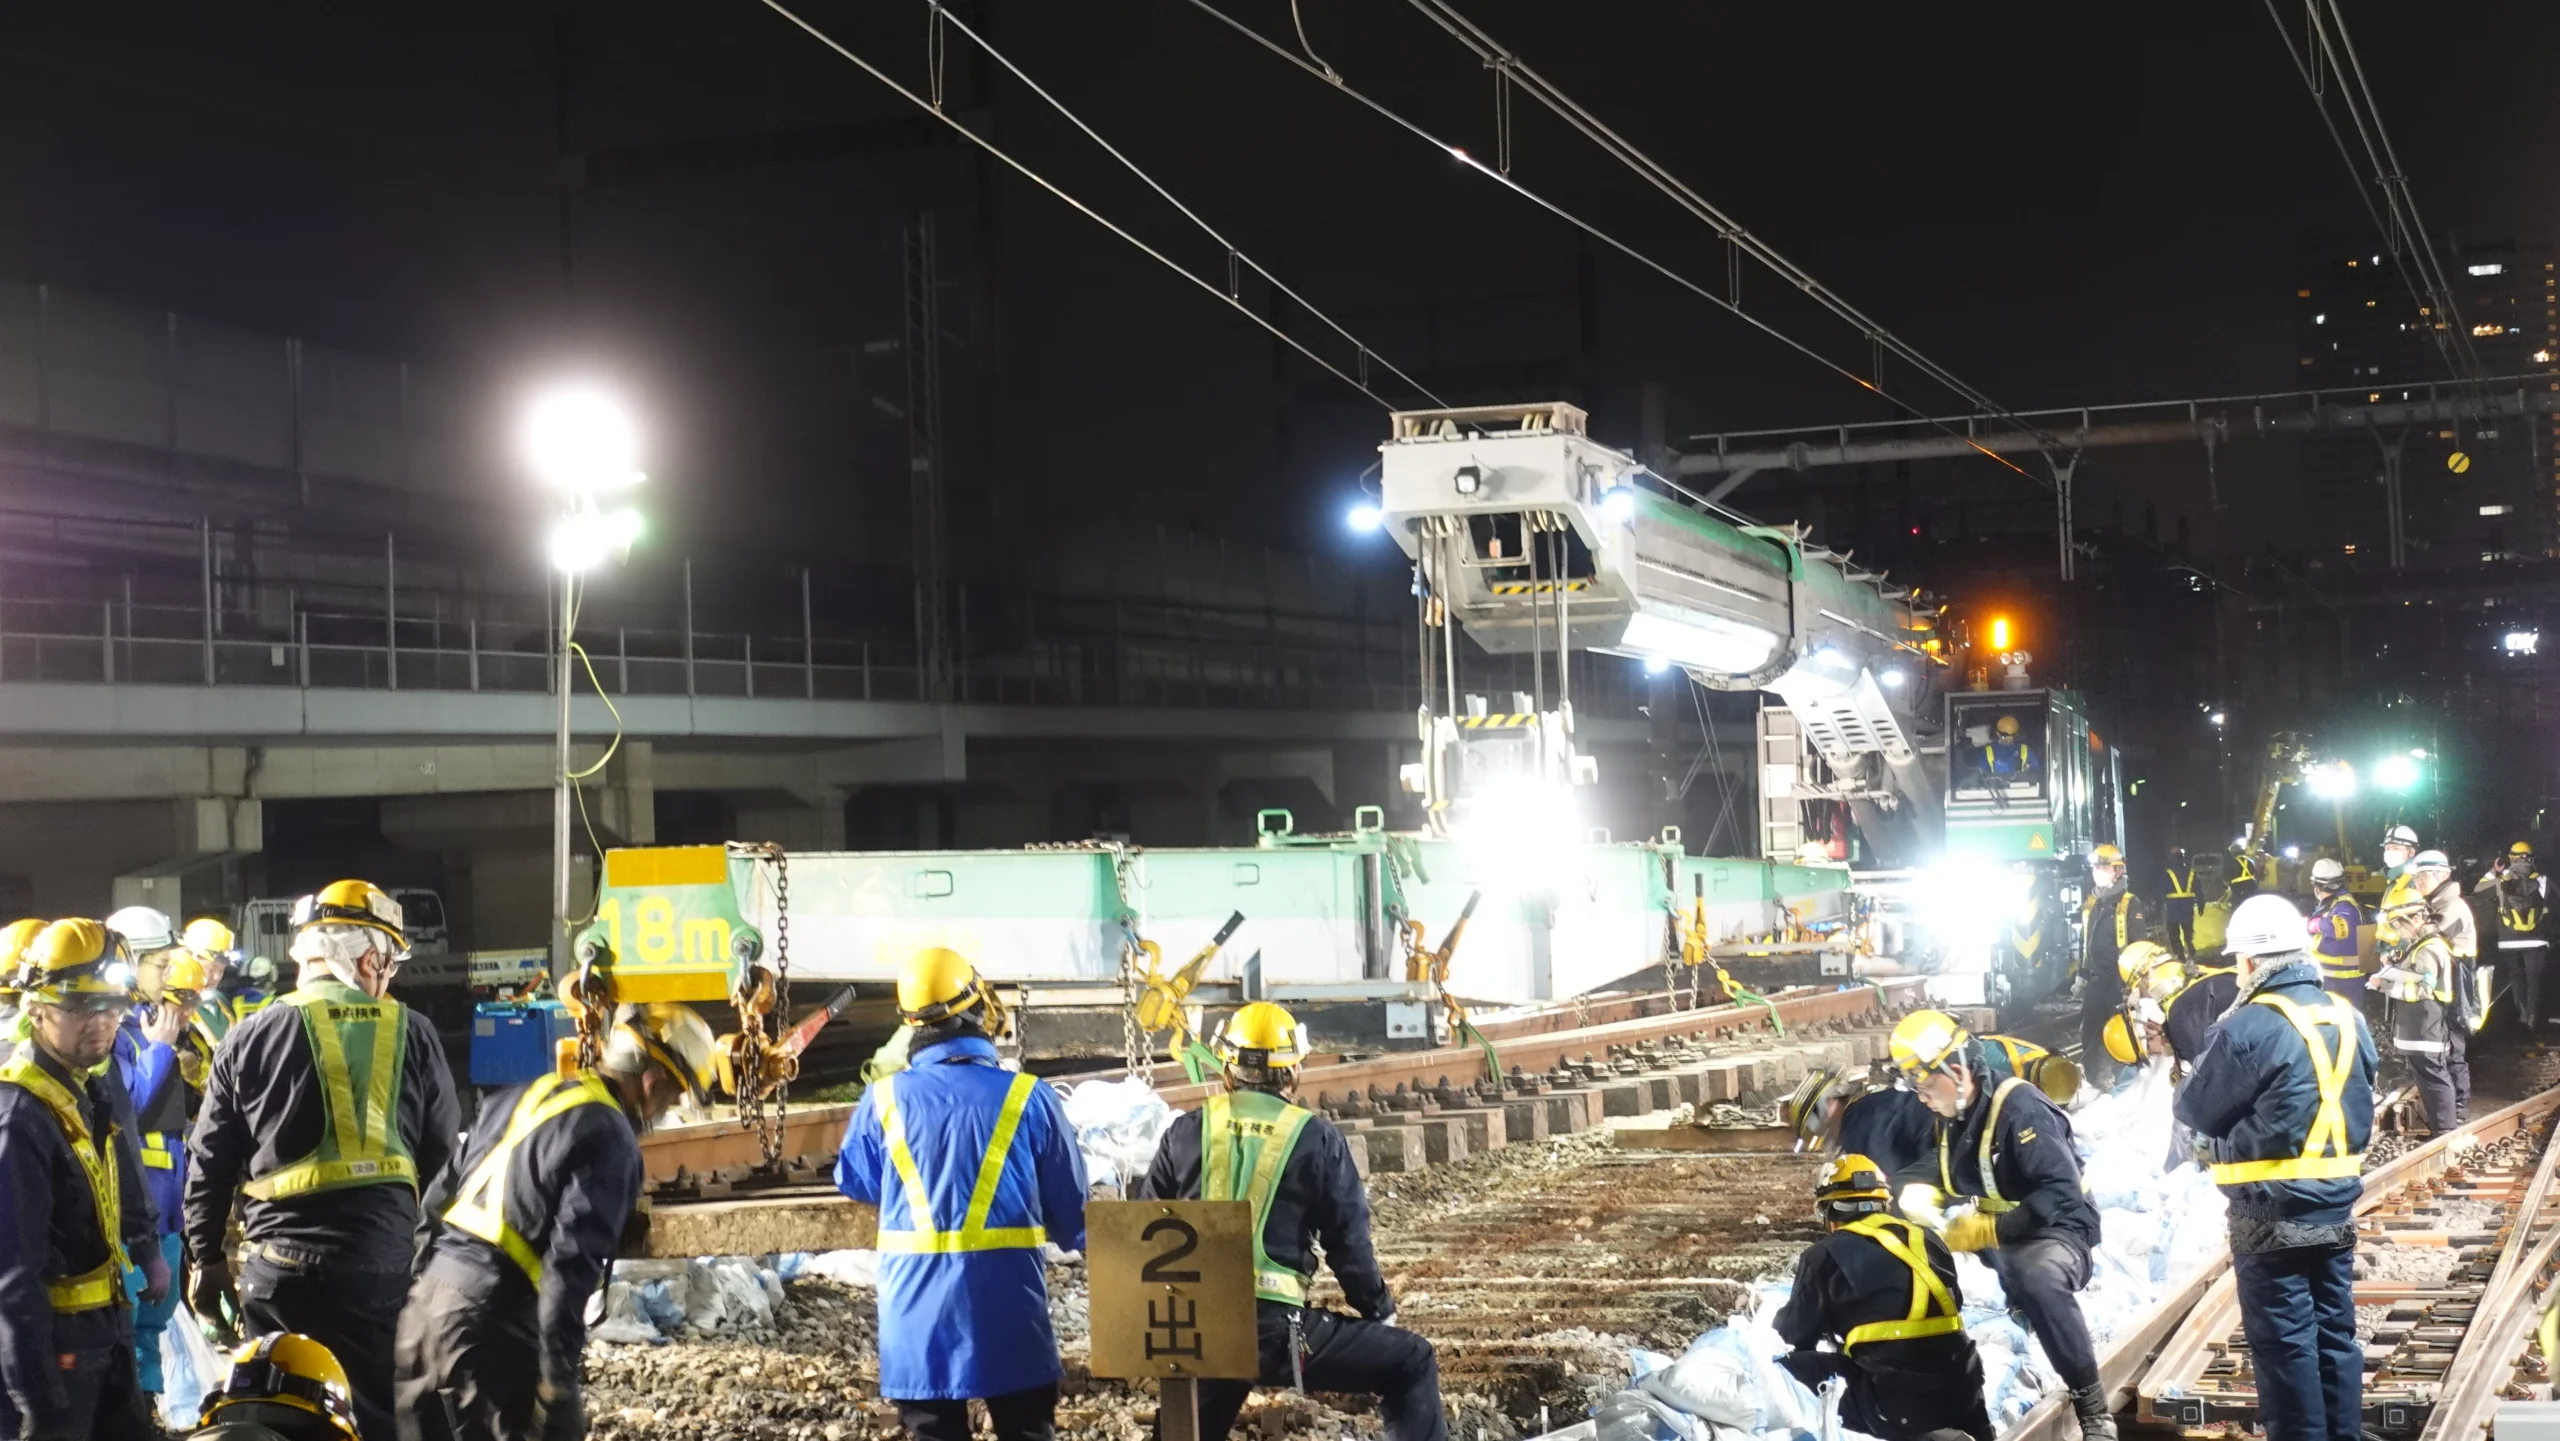 田端駅次世代分岐器敷設工事のサムネイル画像です